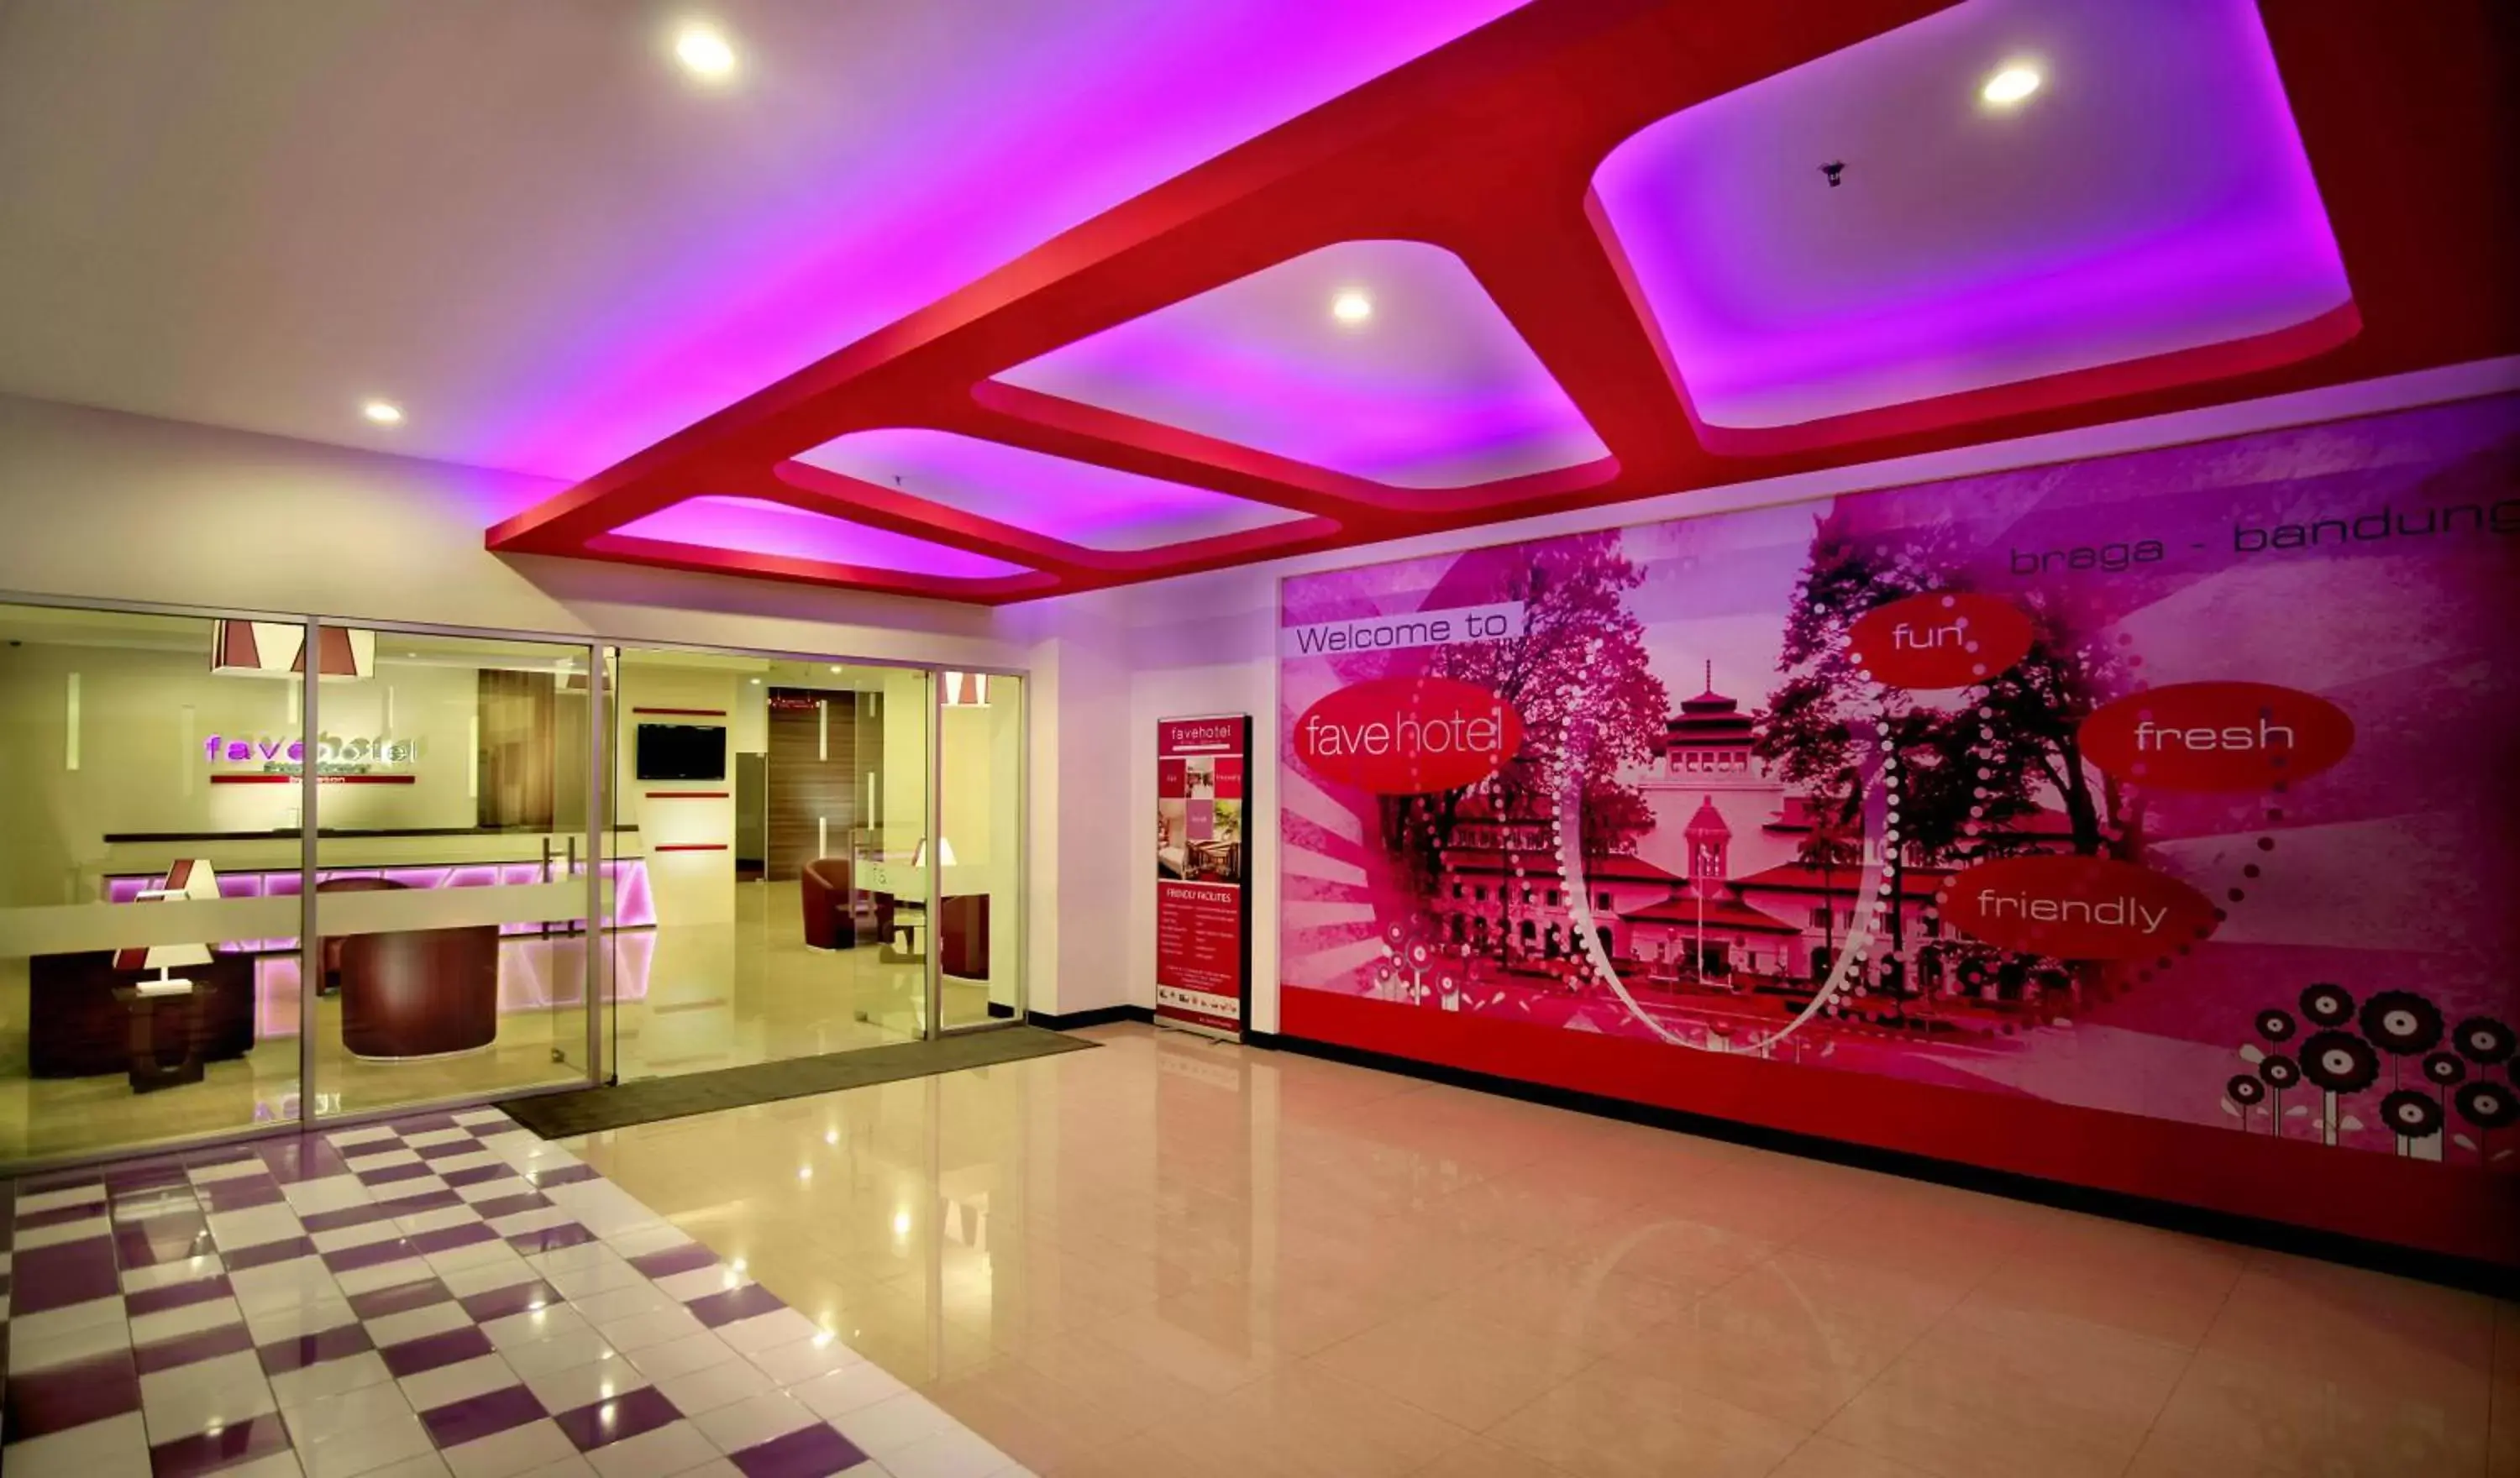 Lobby or reception in favehotel Braga